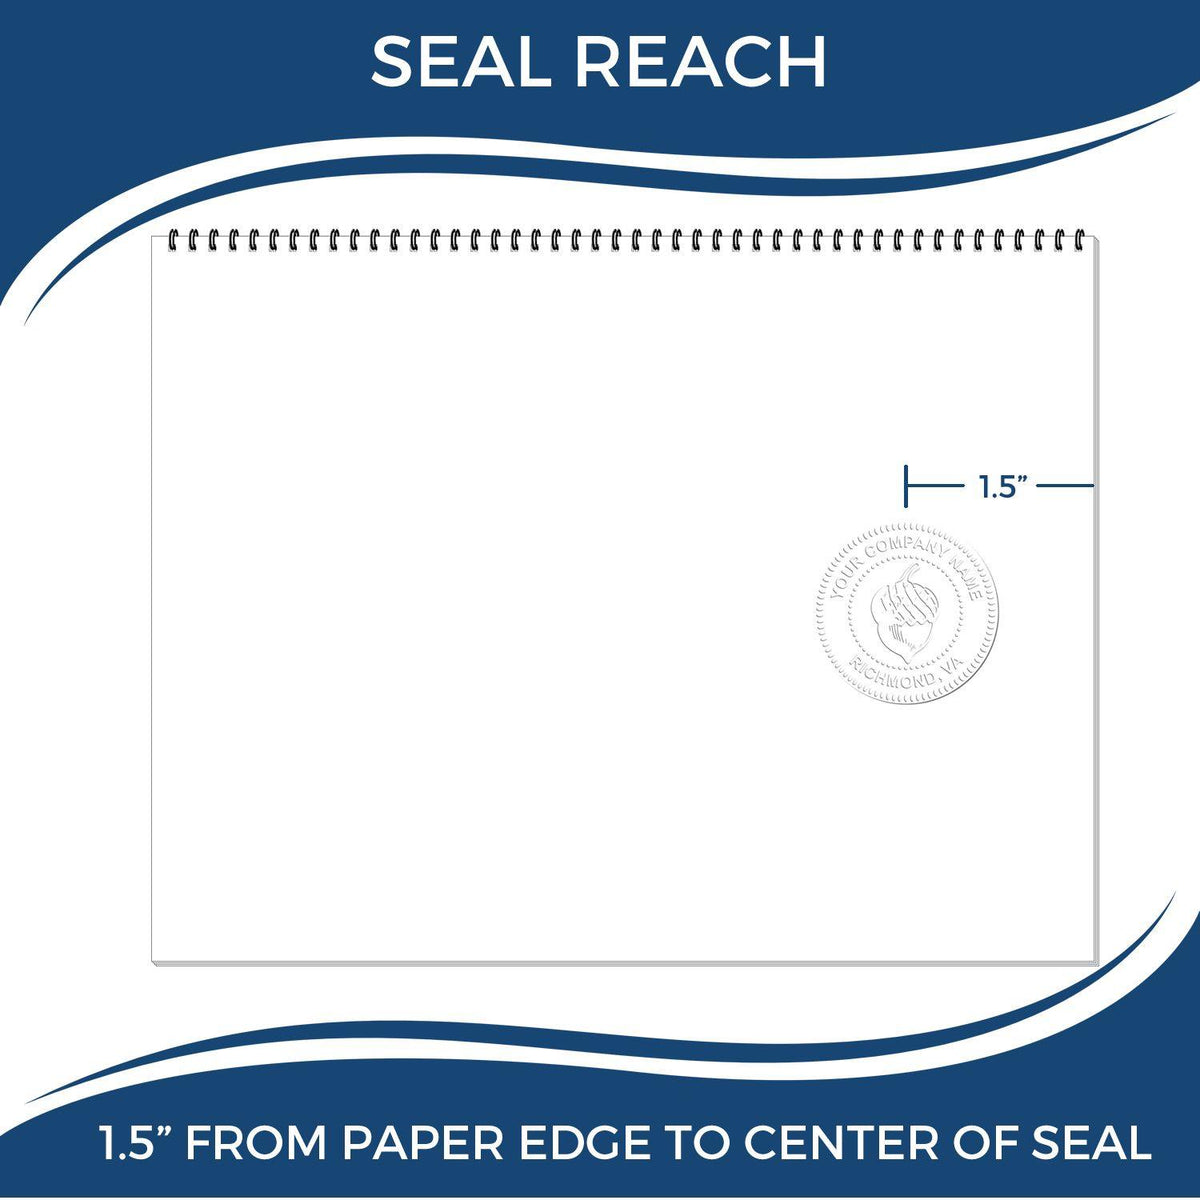 Land Surveyor Handheld Seal Embosser - Engineer Seal Stamps - Embosser Type_Handheld, Type of Use_Professional